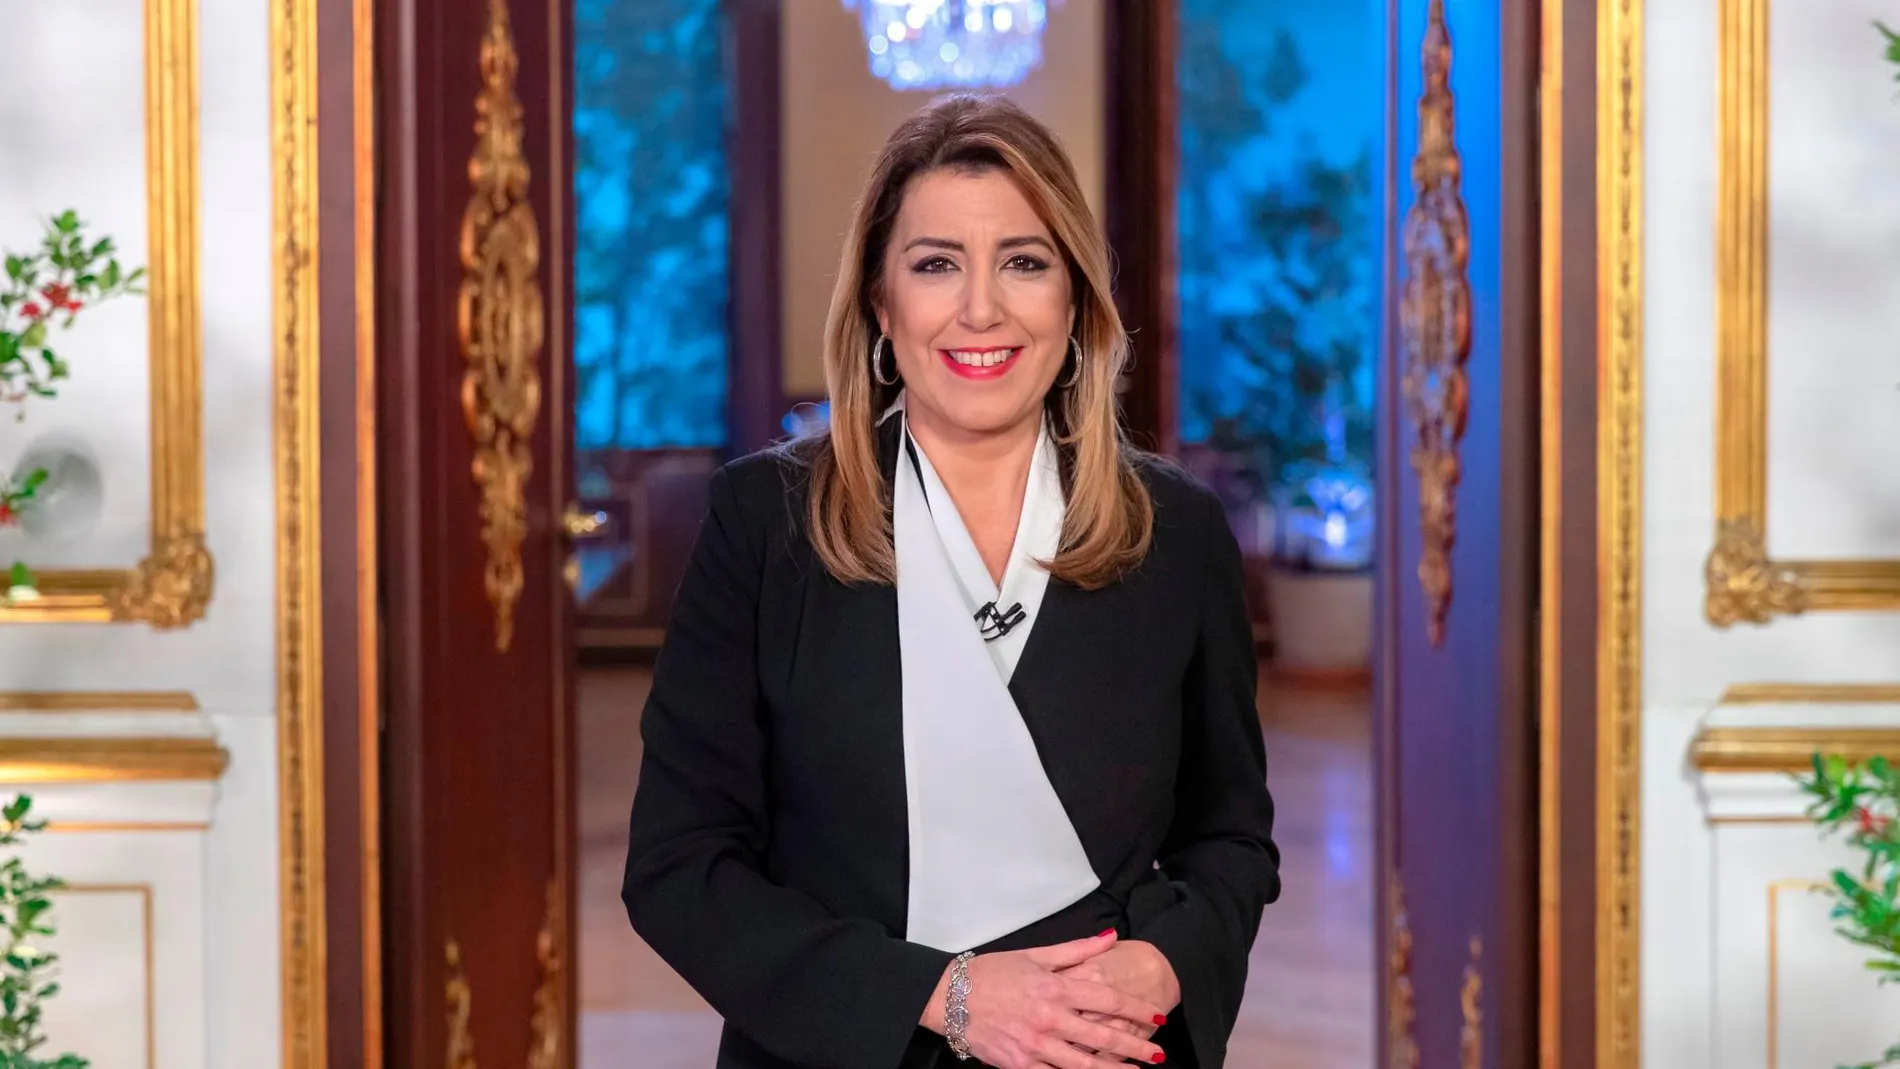 La presidenta en funciones de la Junta de Andalucía, Susana Díaz, durante el mensaje de fin de año/Foto: Efe